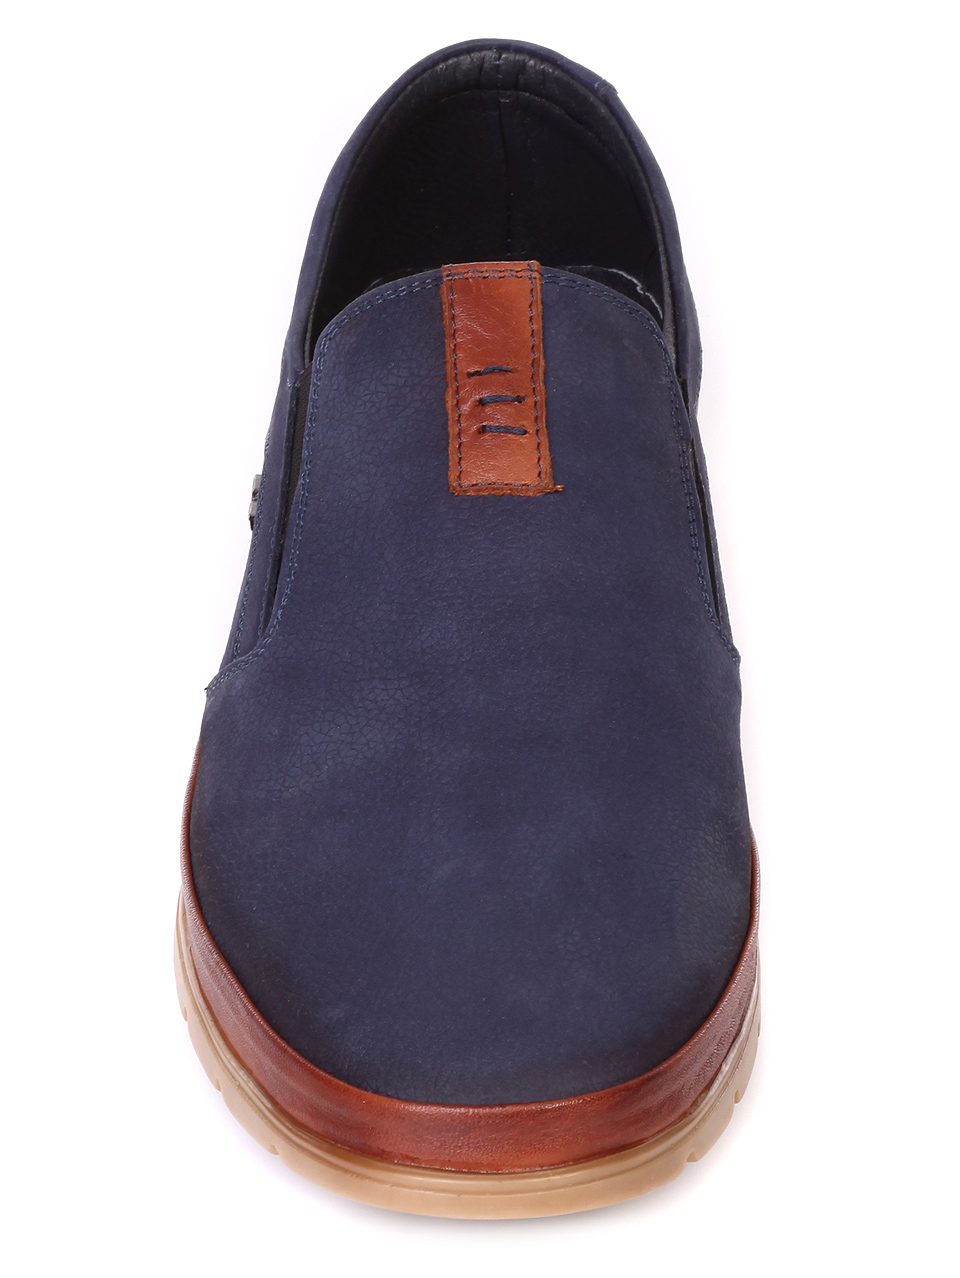 Ежедневни мъжки обувки от естествен набук 7AT-19457 dk.blue